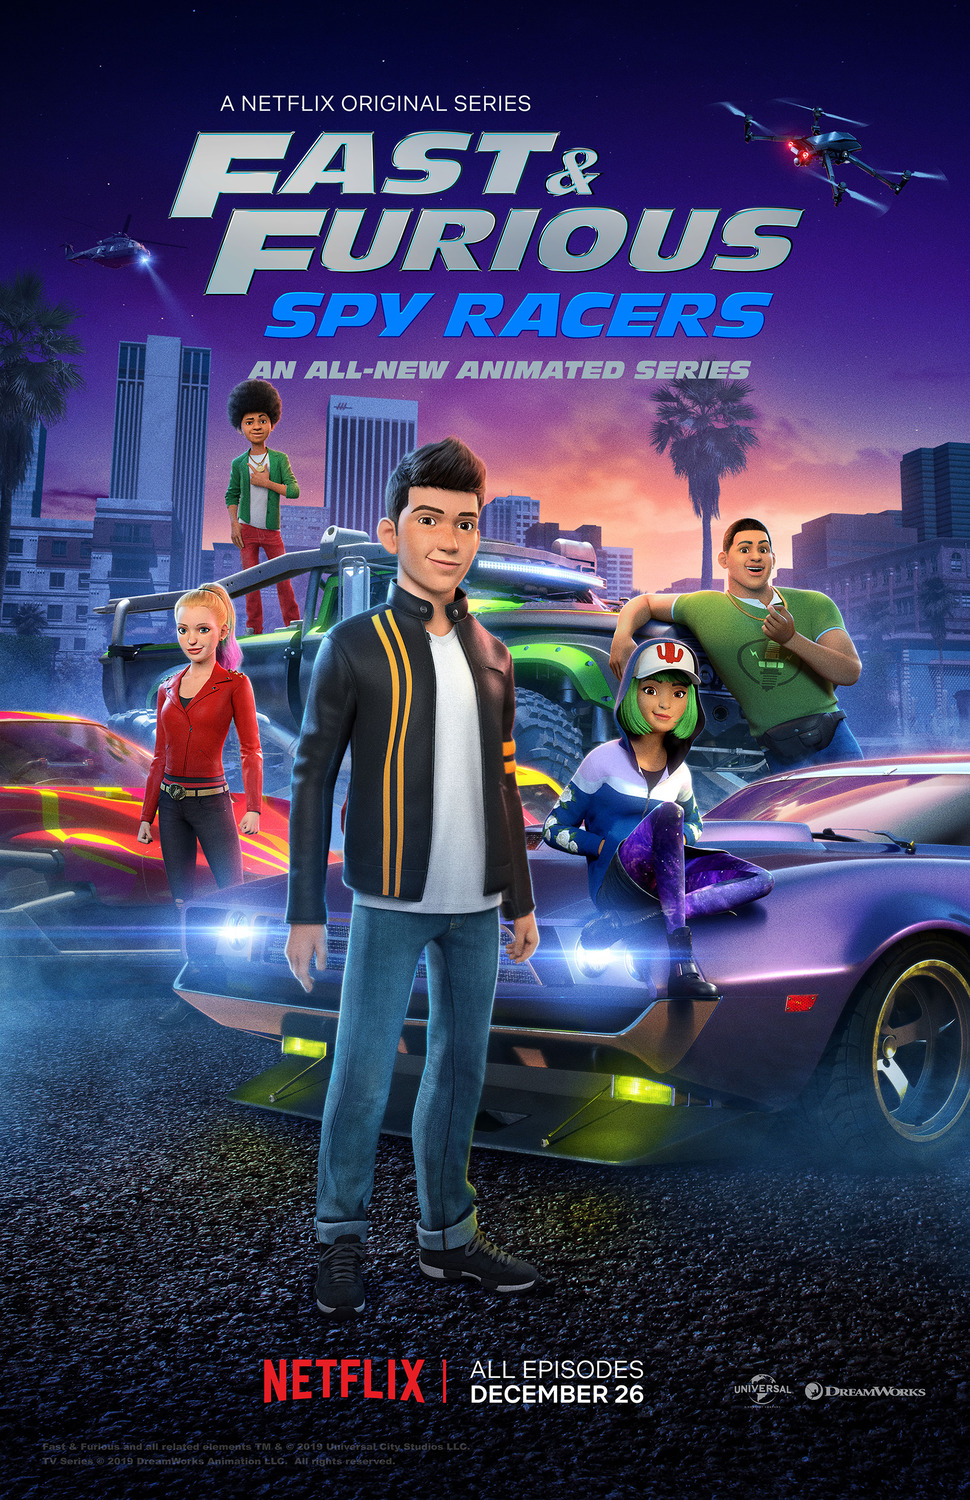 ดูหนังออนไลน์ฟรี Fast & Furious Spy Racers Season 6 EP2 เร็วแรงทะลุนรก ซิ่งสยบโลก ซีซั่น 6 ตอนที่ 2